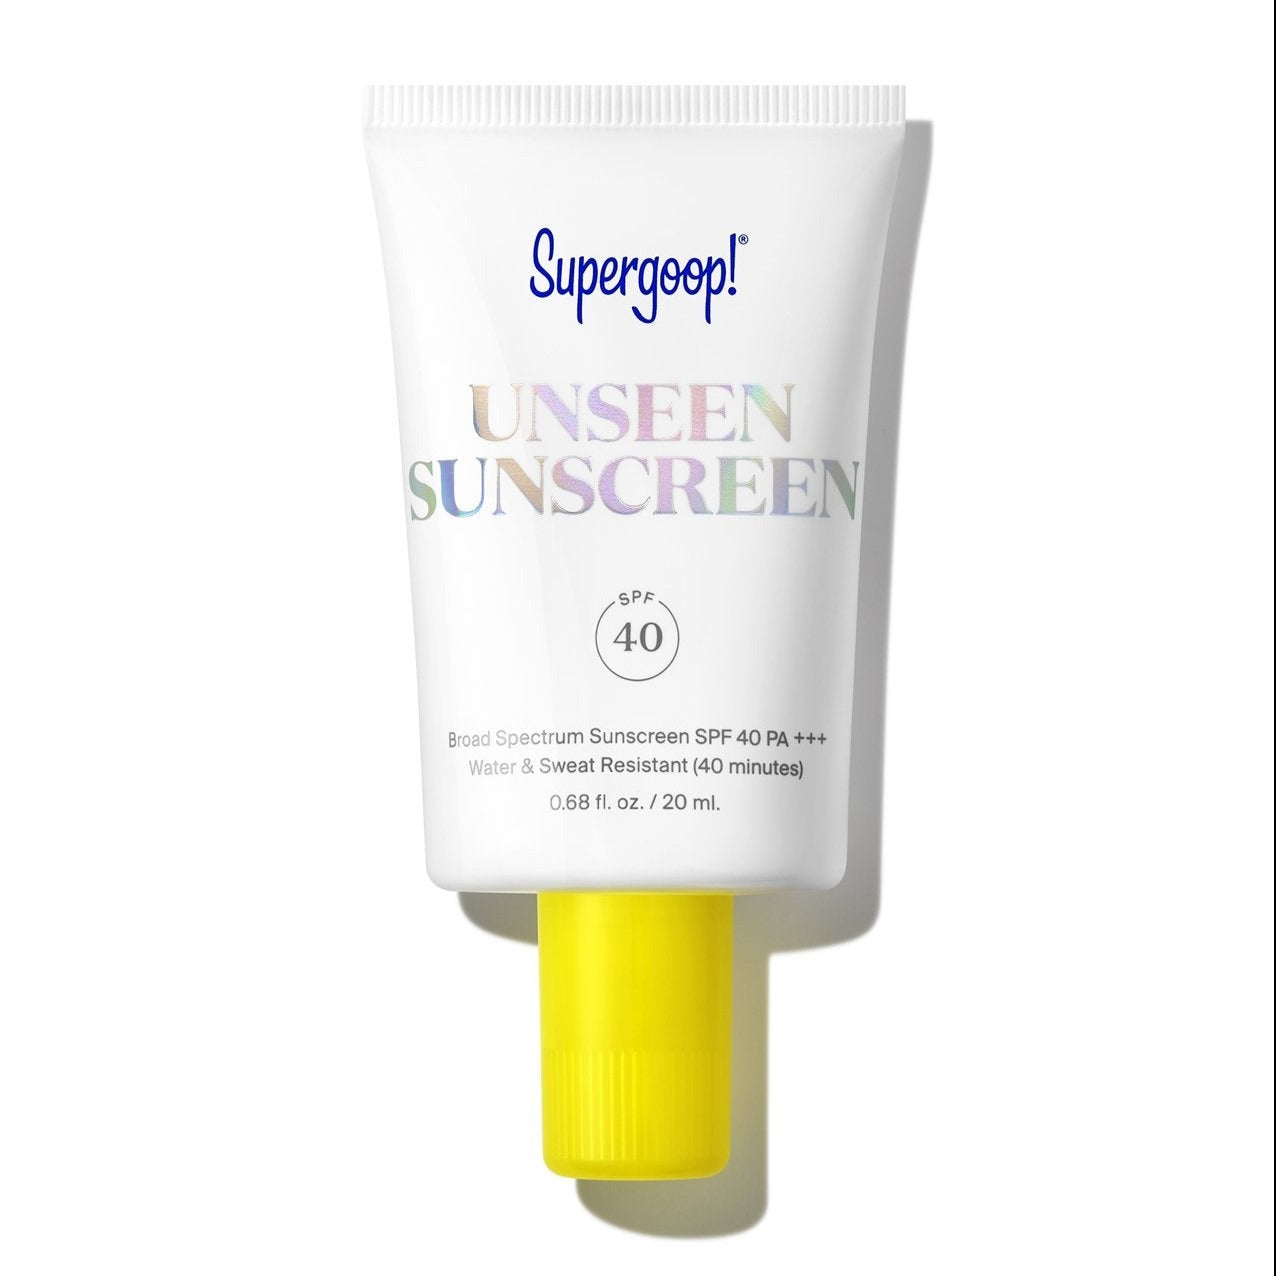 Unseen Sunscreen